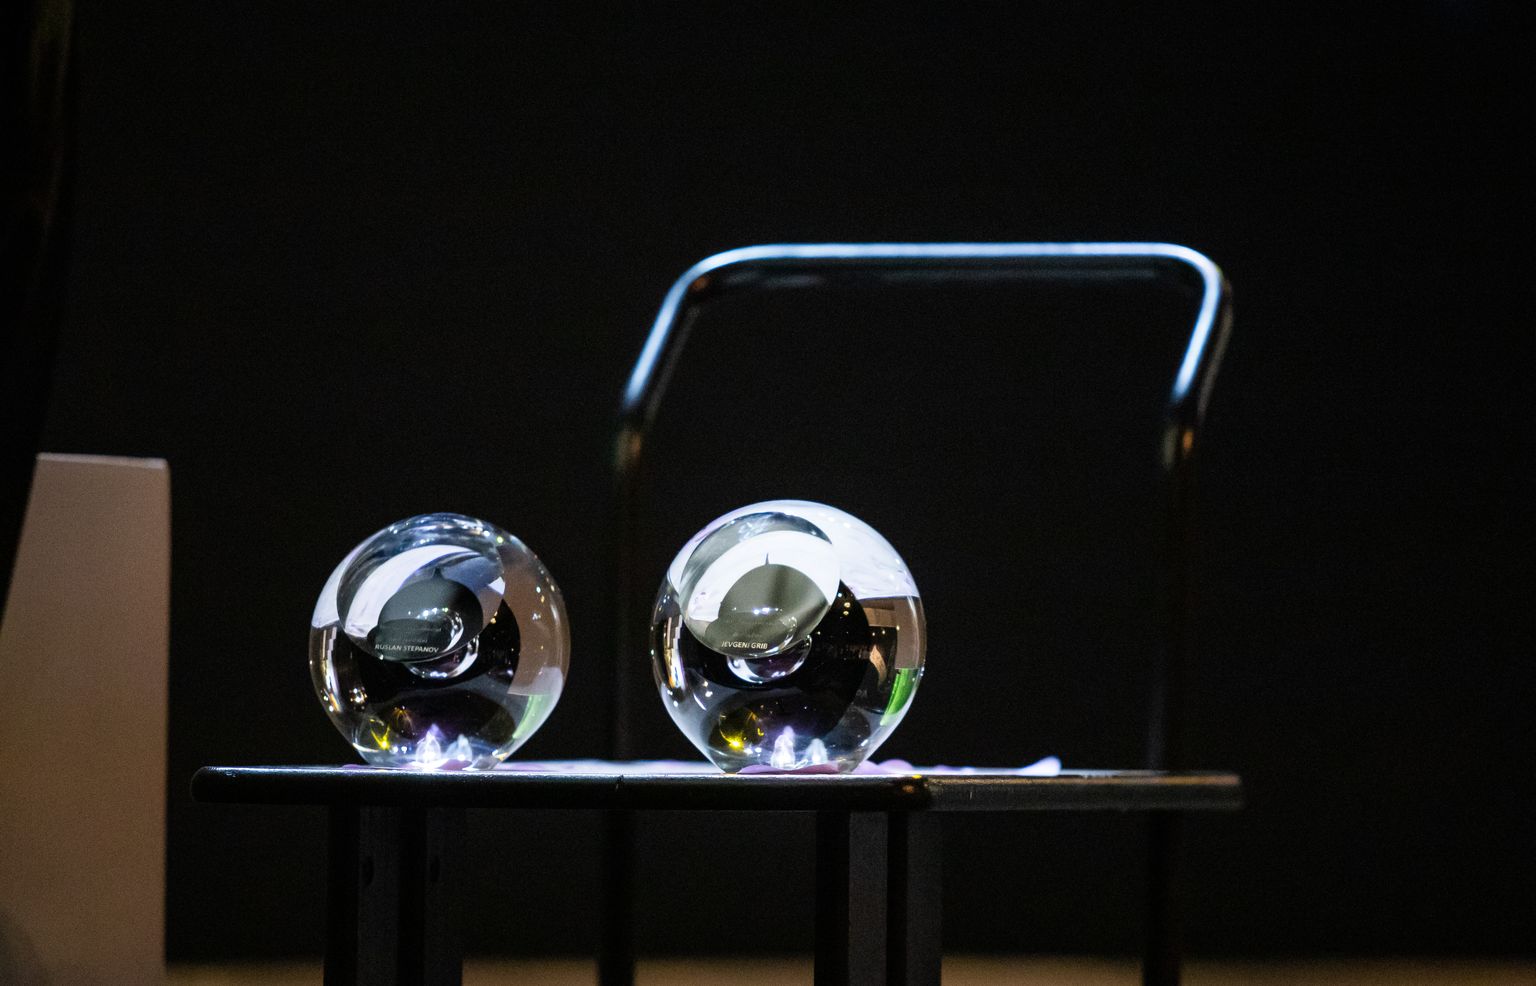 Eesti teatriliidu juhatus otsustas aastal 2006 hakata aastaauhinna laureaatidele andma Ivo Lille klaaskuuli "Theodori silm".  Foto on tehtud teatripäeva peol 2019 Rakvere teatris.